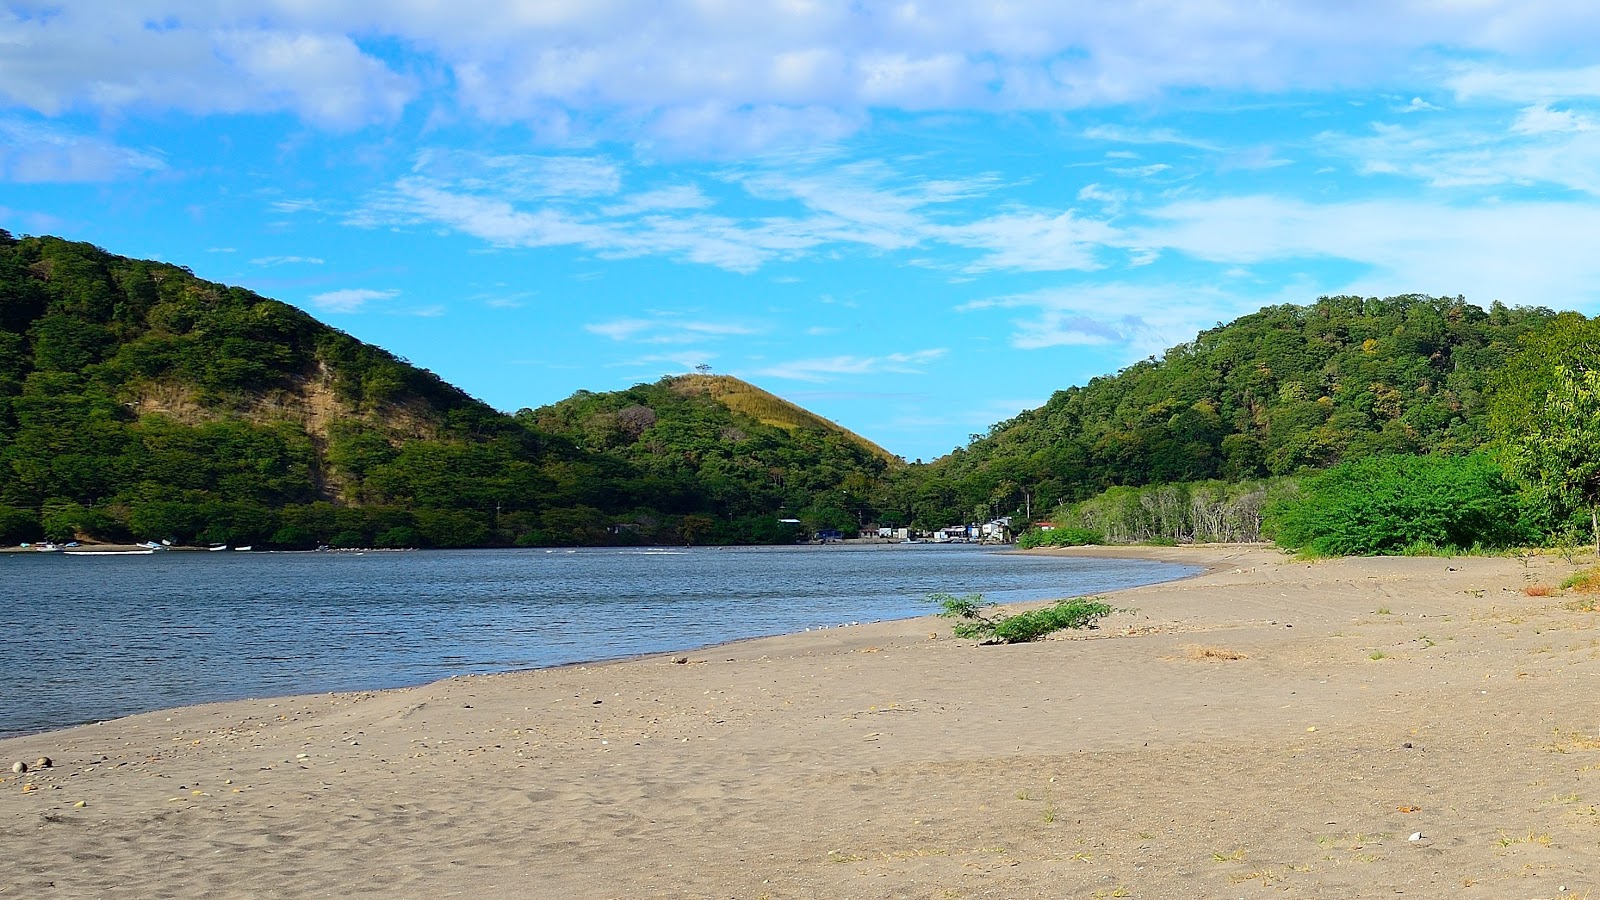 Zdjęcie Cuajiniquil beach z powierzchnią jasny piasek